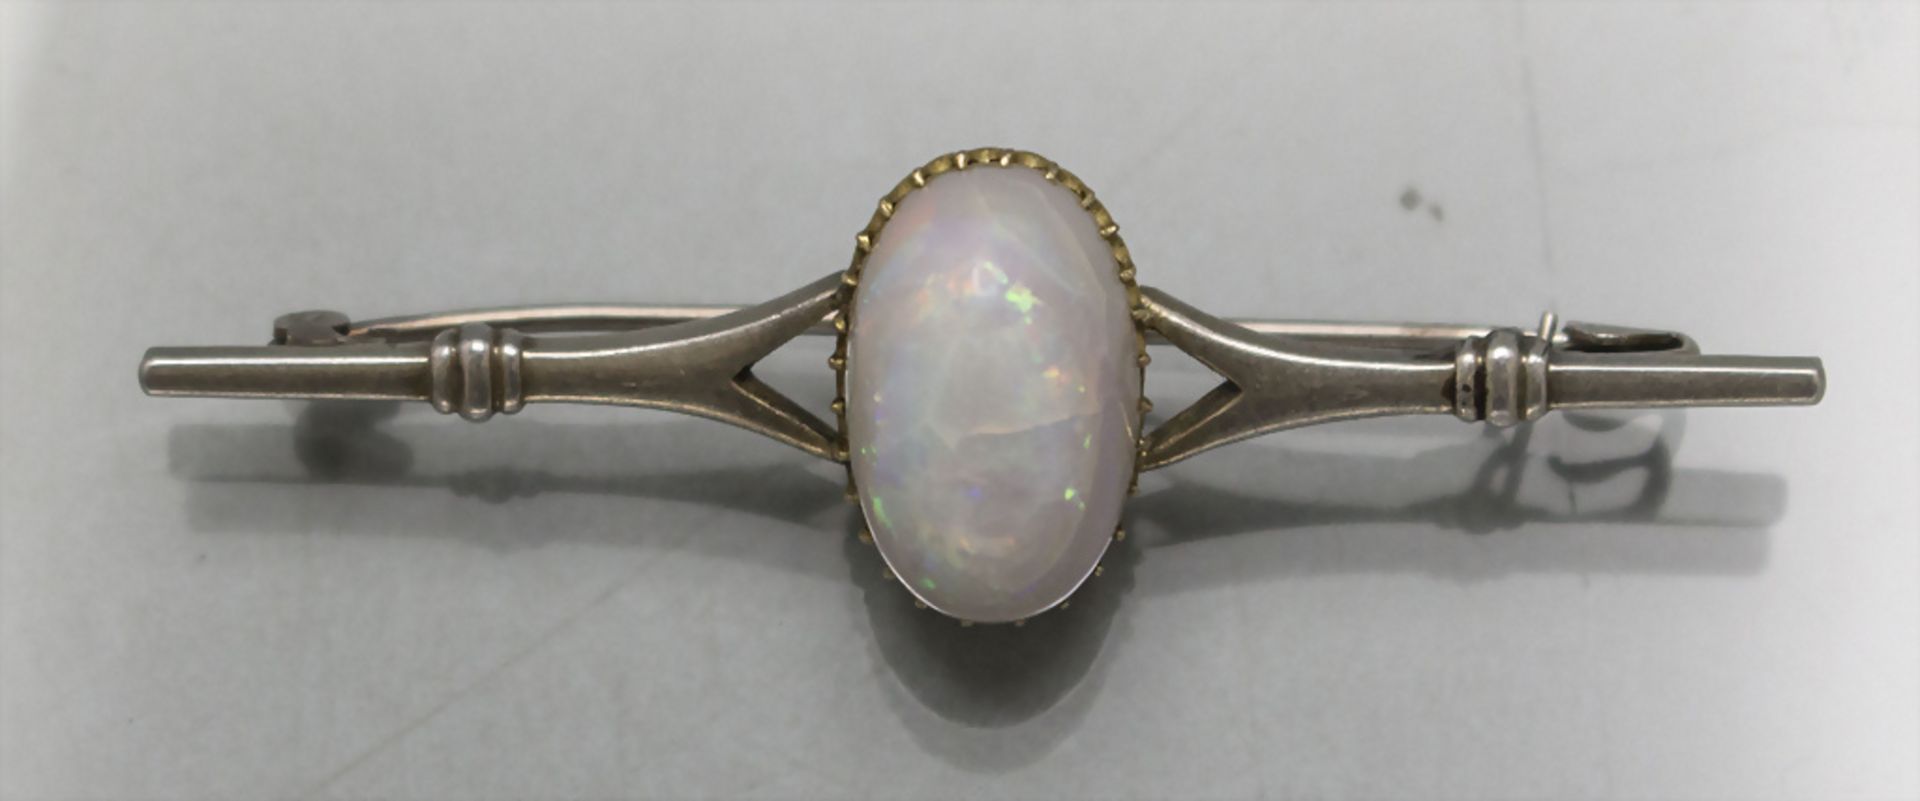 Brosche mit Opal / A brooch with an opal